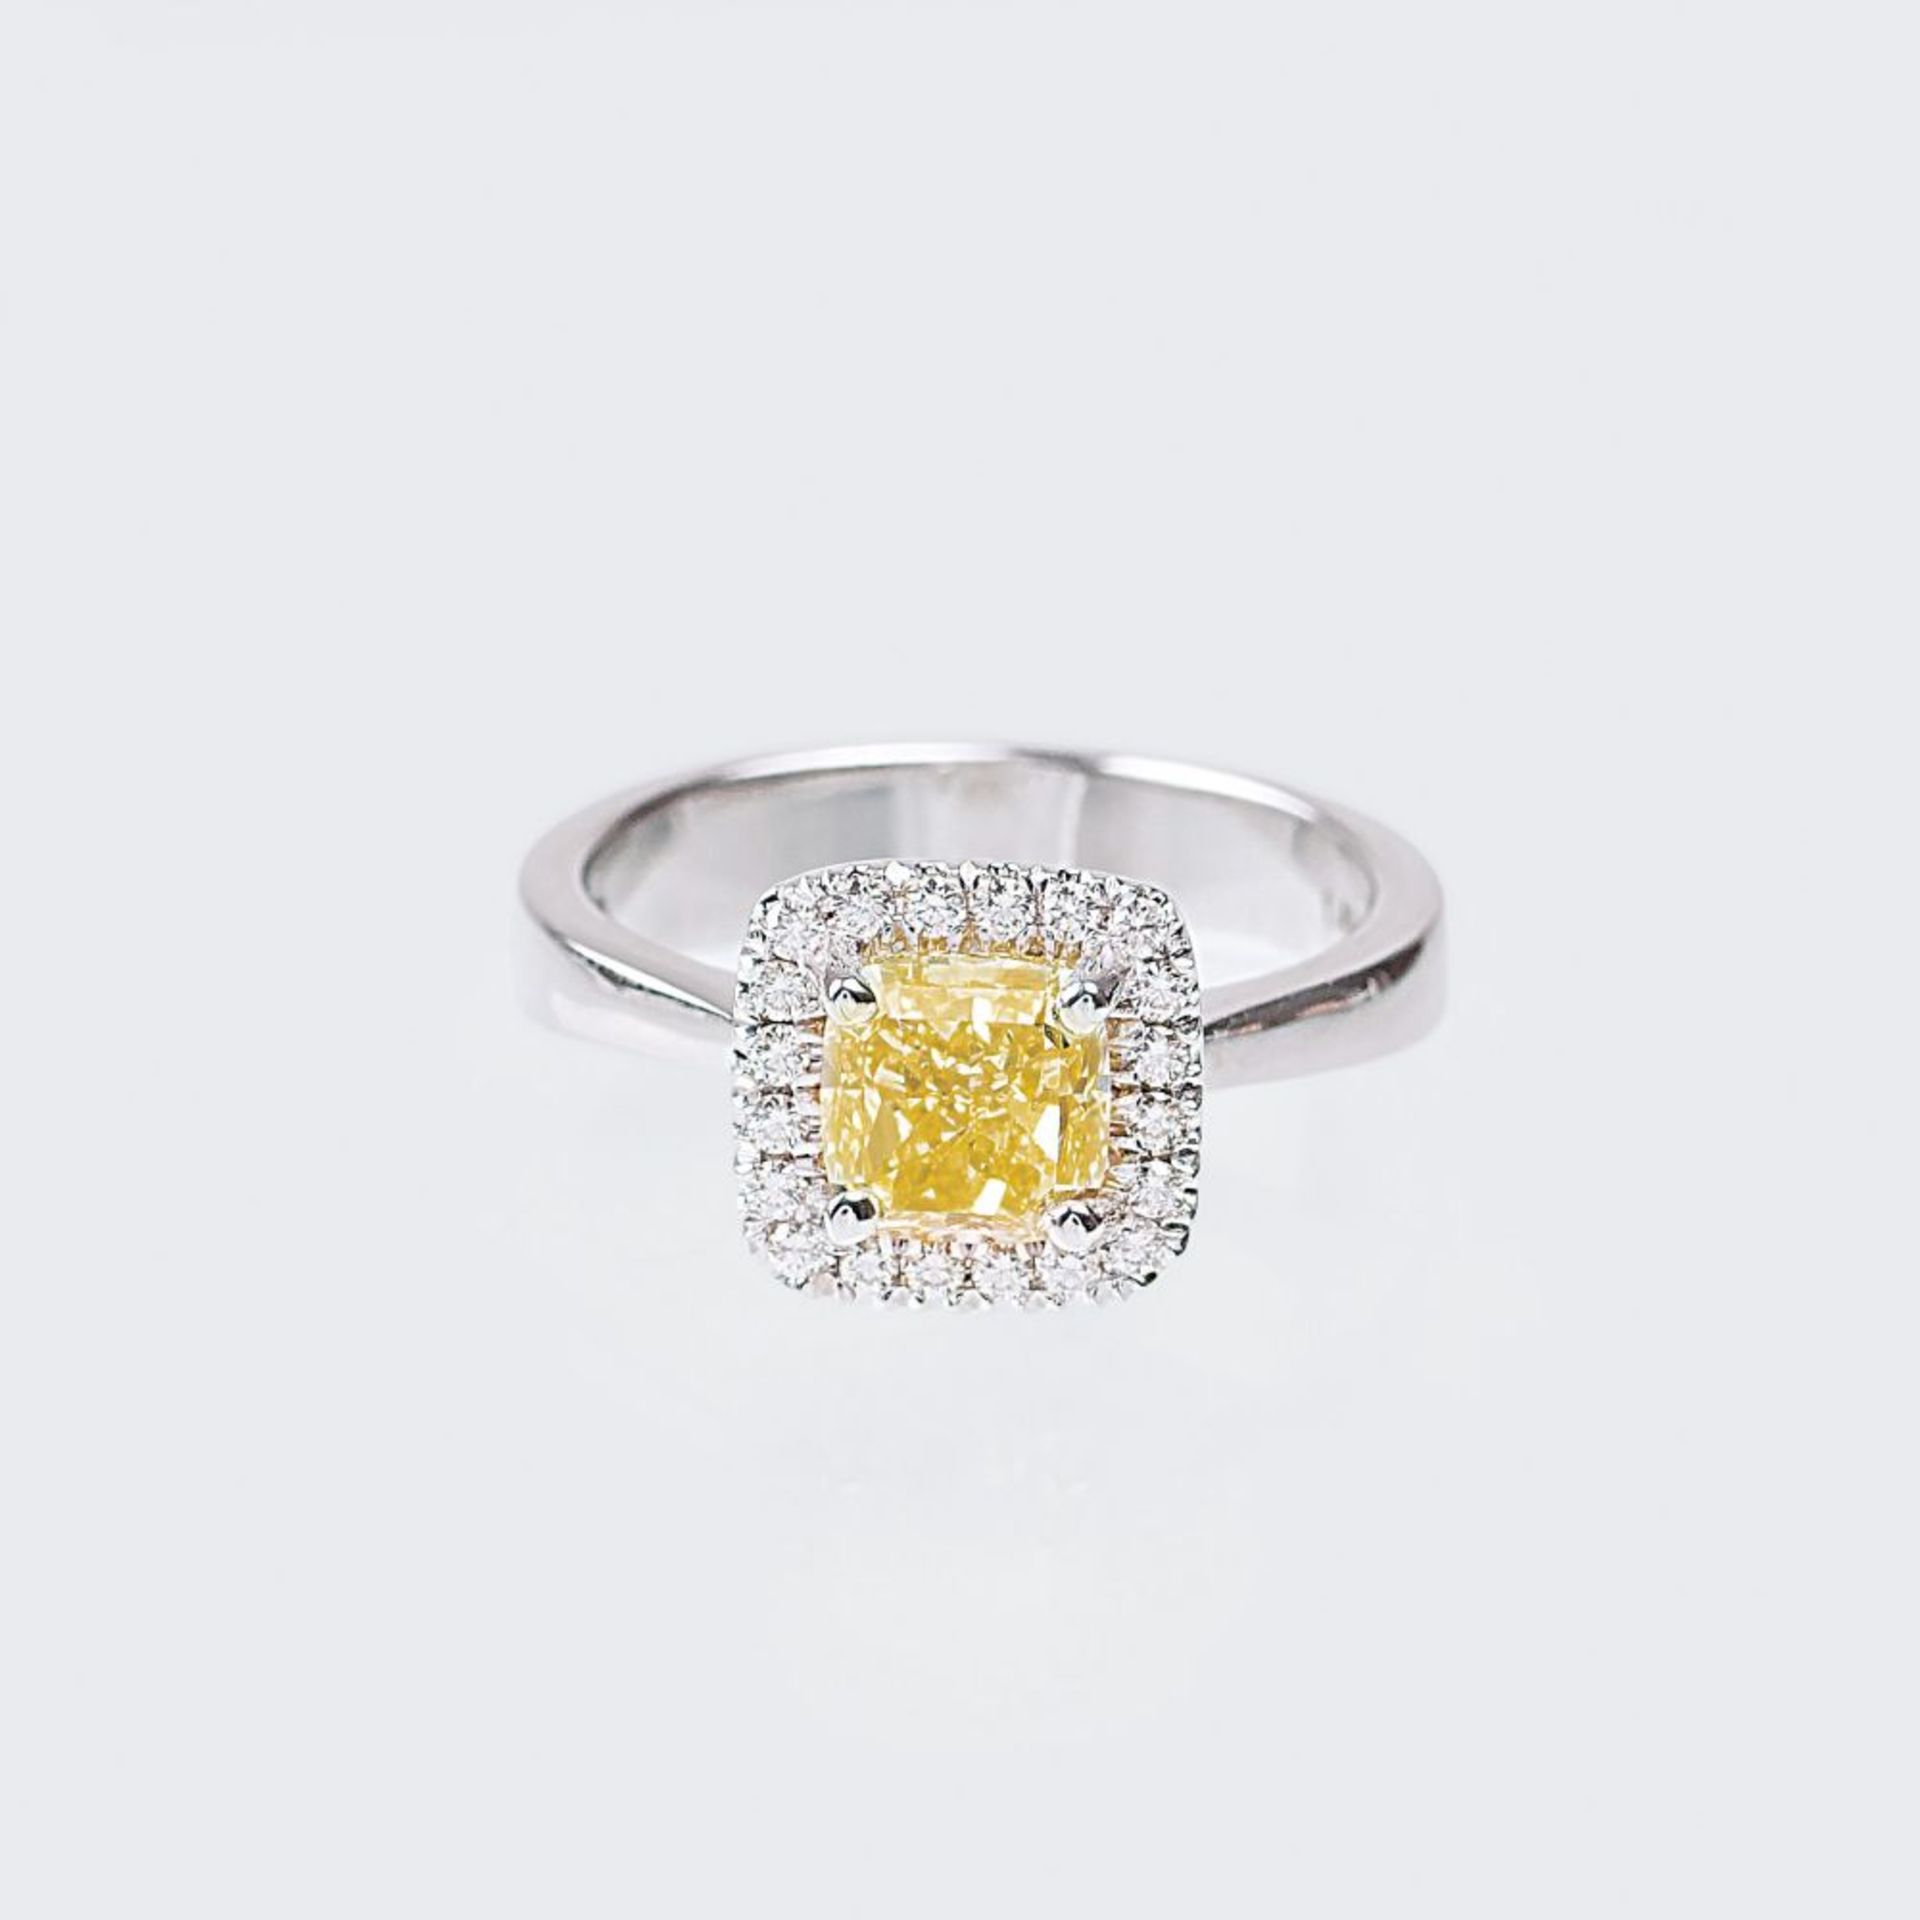 Fancy Diamant-Ring. 18 kt. WG, gest. Der Fancy Diamant im Kissenschliff 1.43 ct. FancyYellow.vs2 von